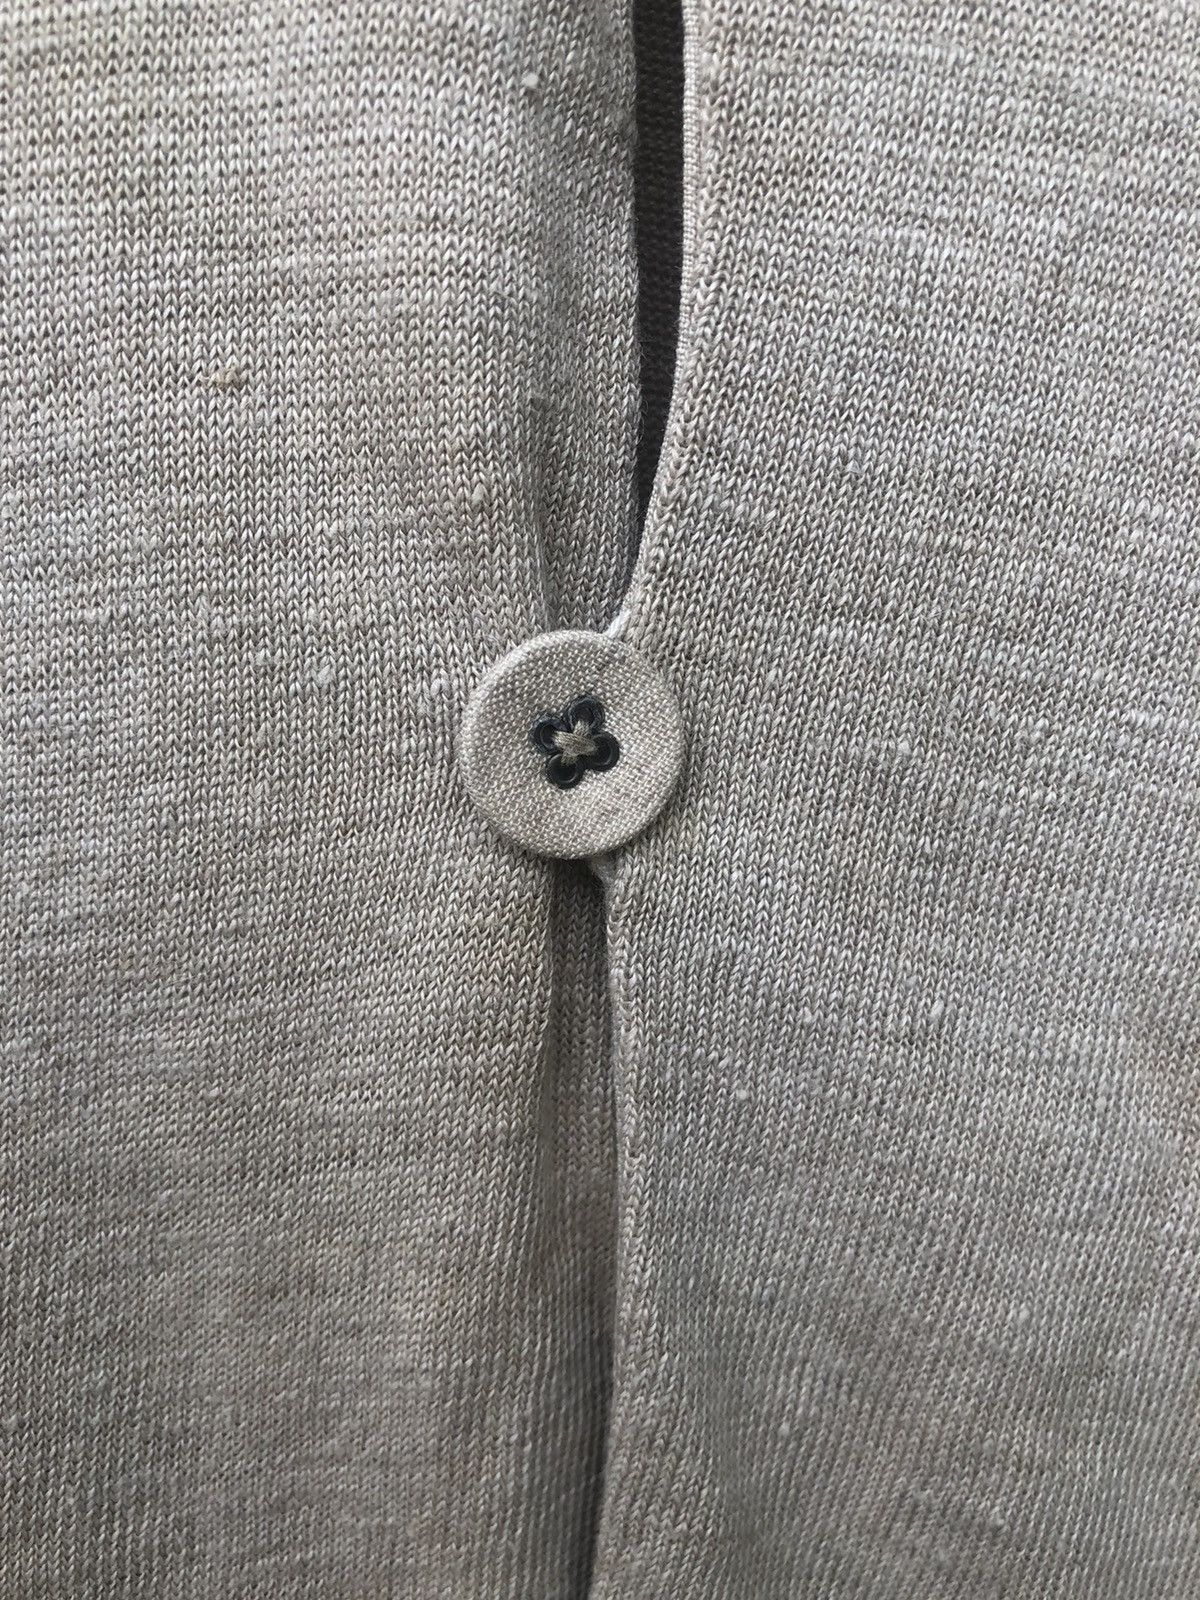 👉Kapital Kiro Hirata Long Sleeve Cardigan Sweater - 4